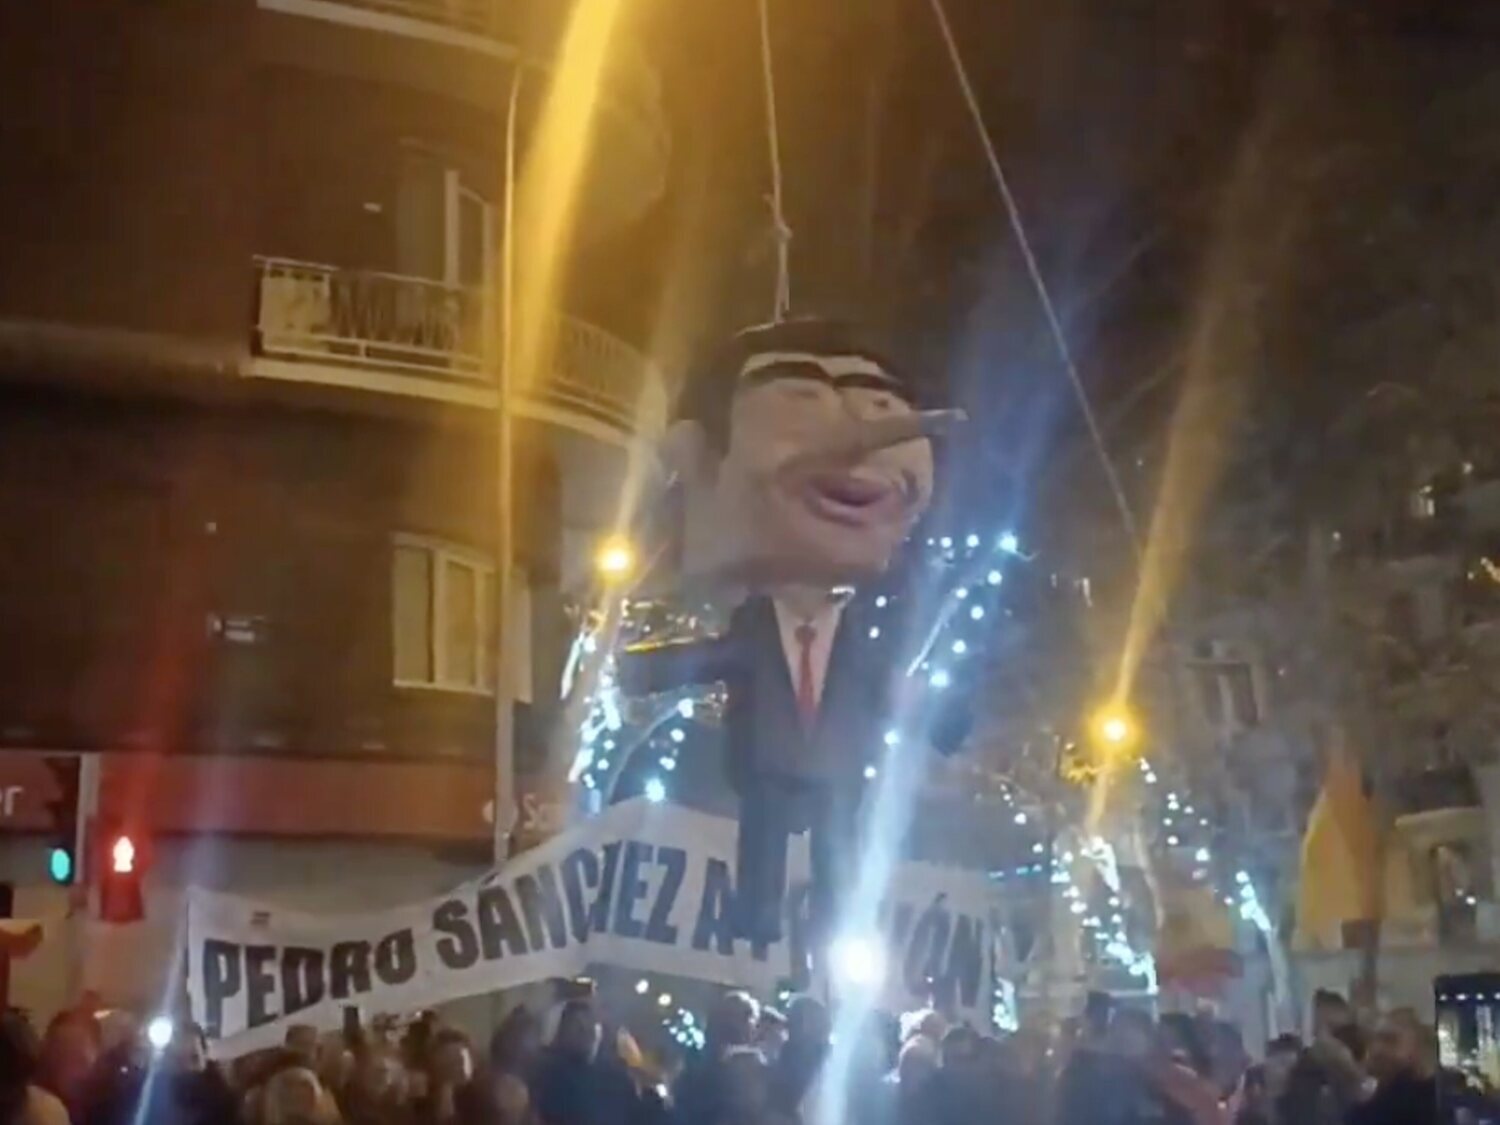 Un grupo de manifestantes ultras golpean y ahorcan a un muñeco de Pedro Sánchez en Ferraz en Nochevieja